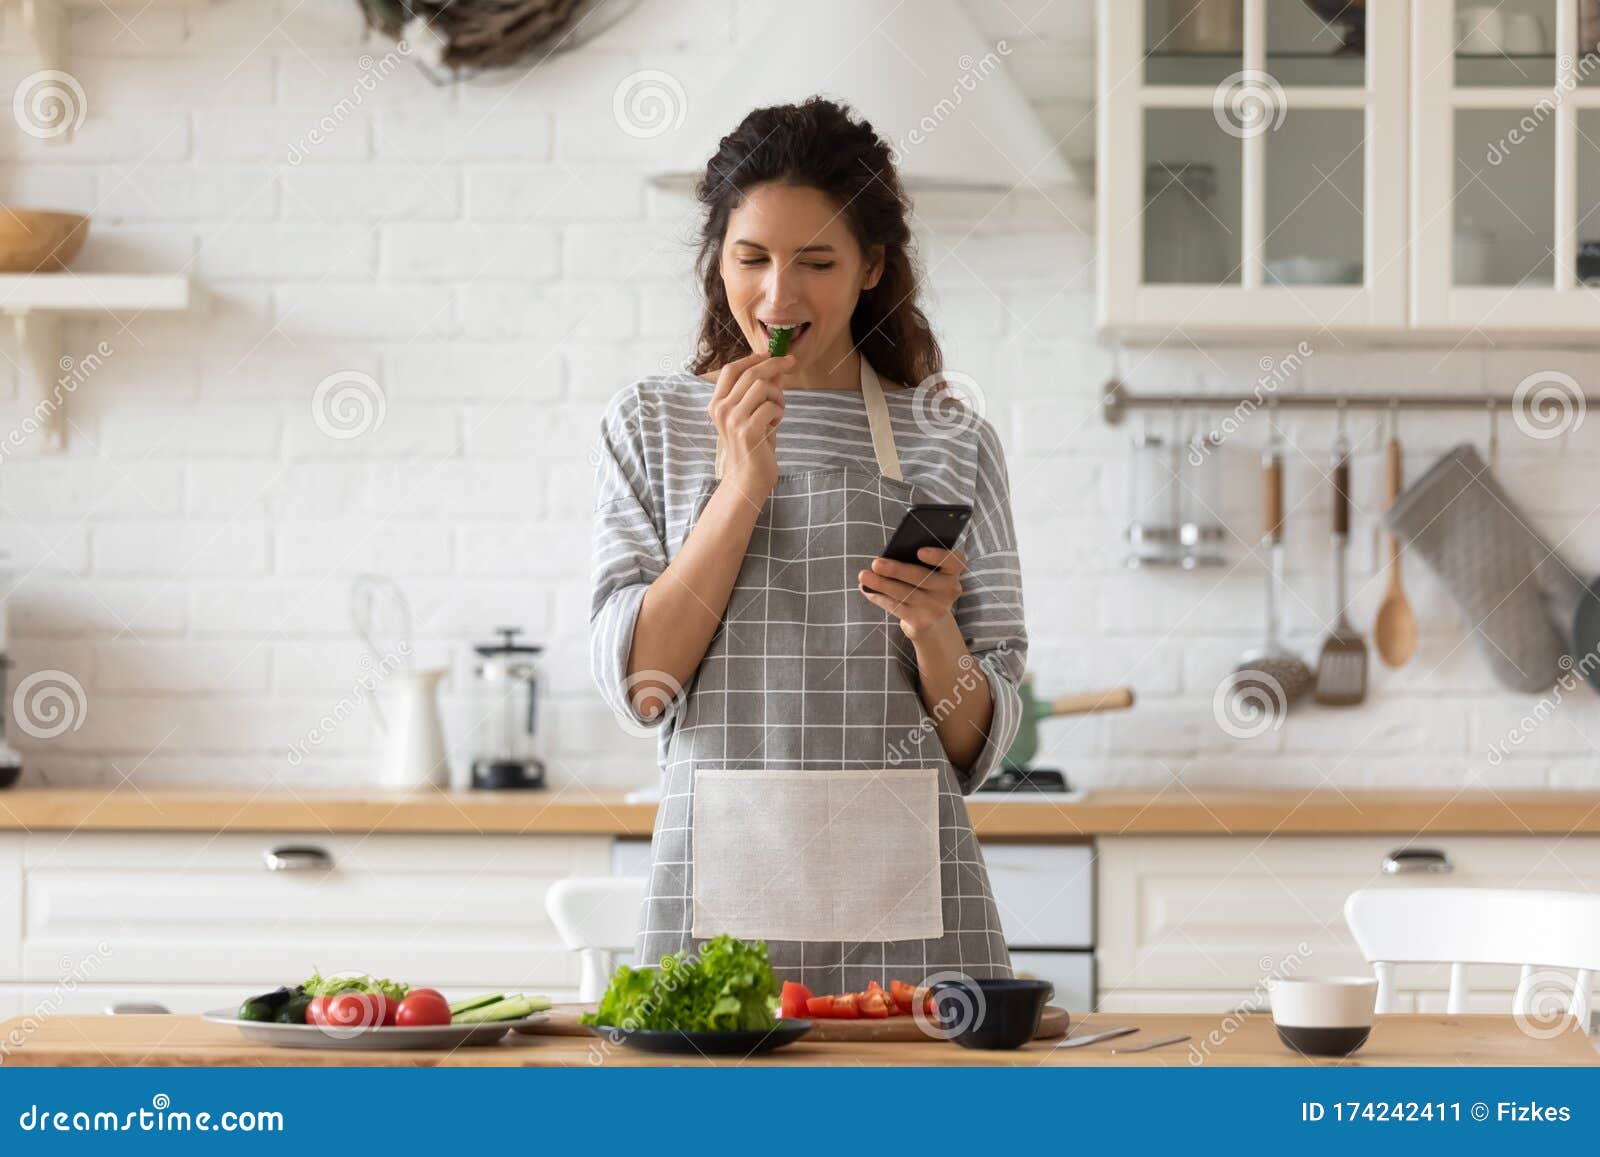 女人在厨房里做饭 库存图片. 图片 包括有 生活方式, 健康, 礼服, 管理, 内部, 膳食, 杓子, 国内 - 177528291